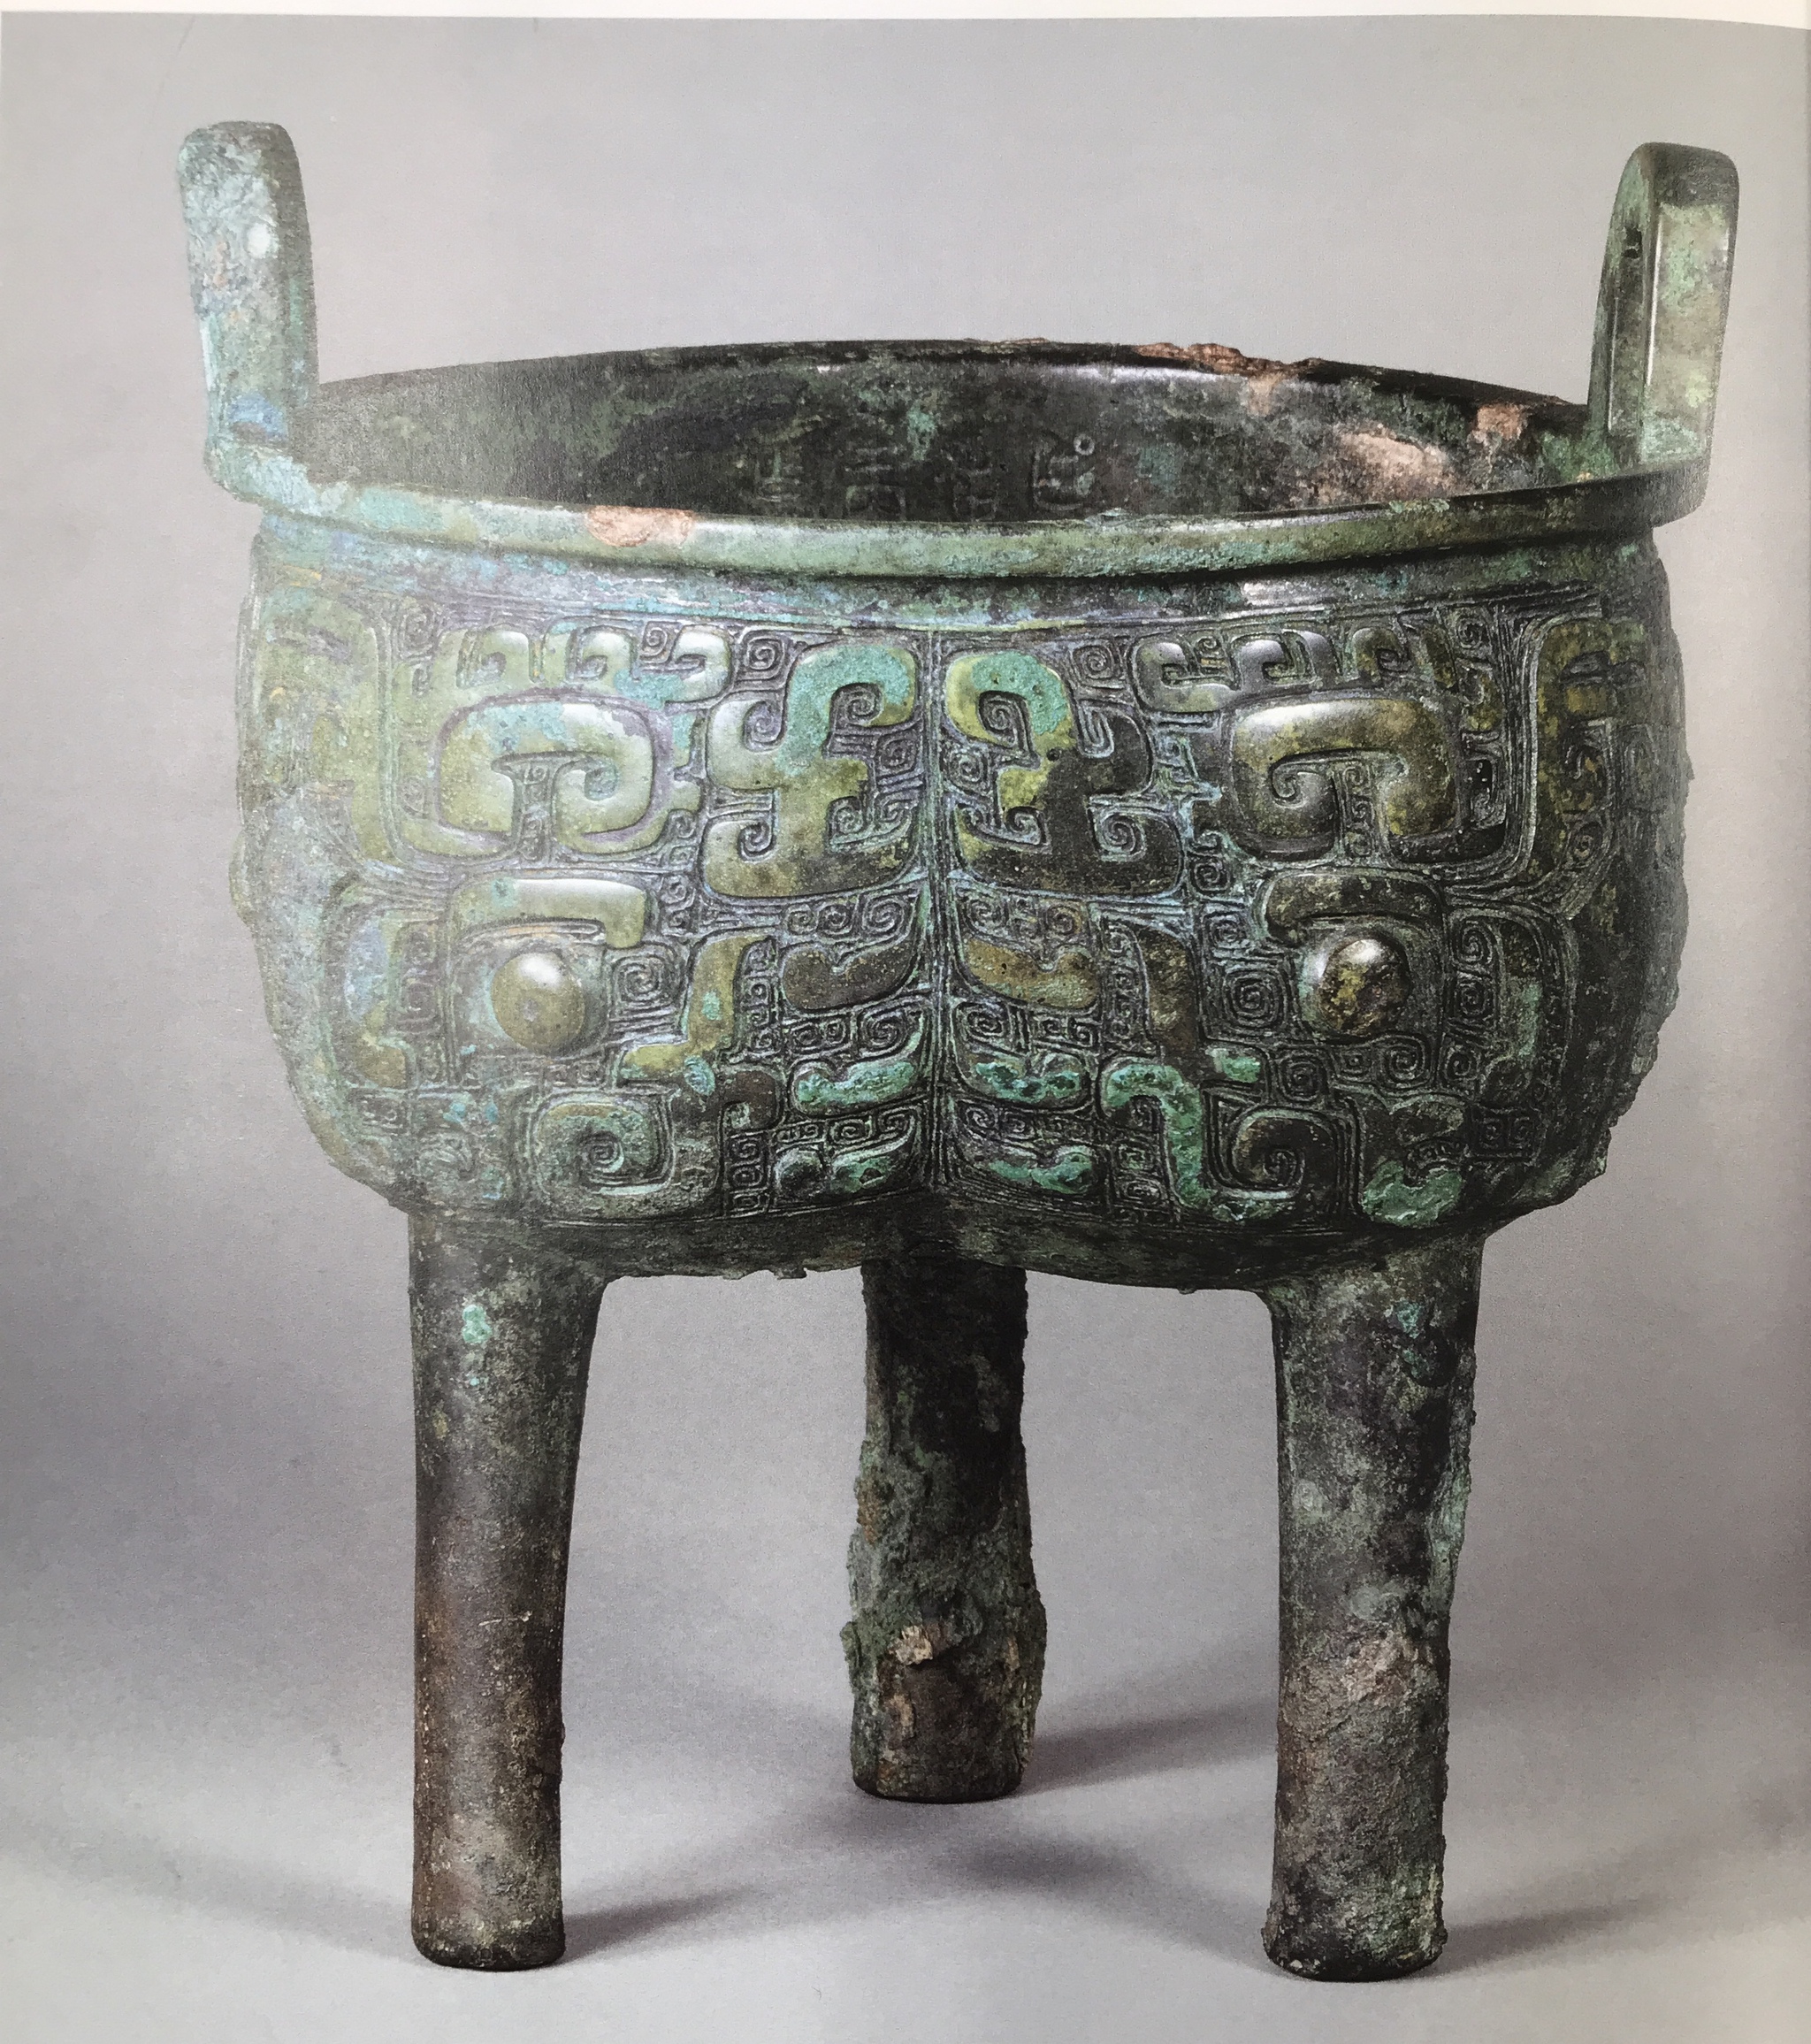 青銅器と漢字の起源